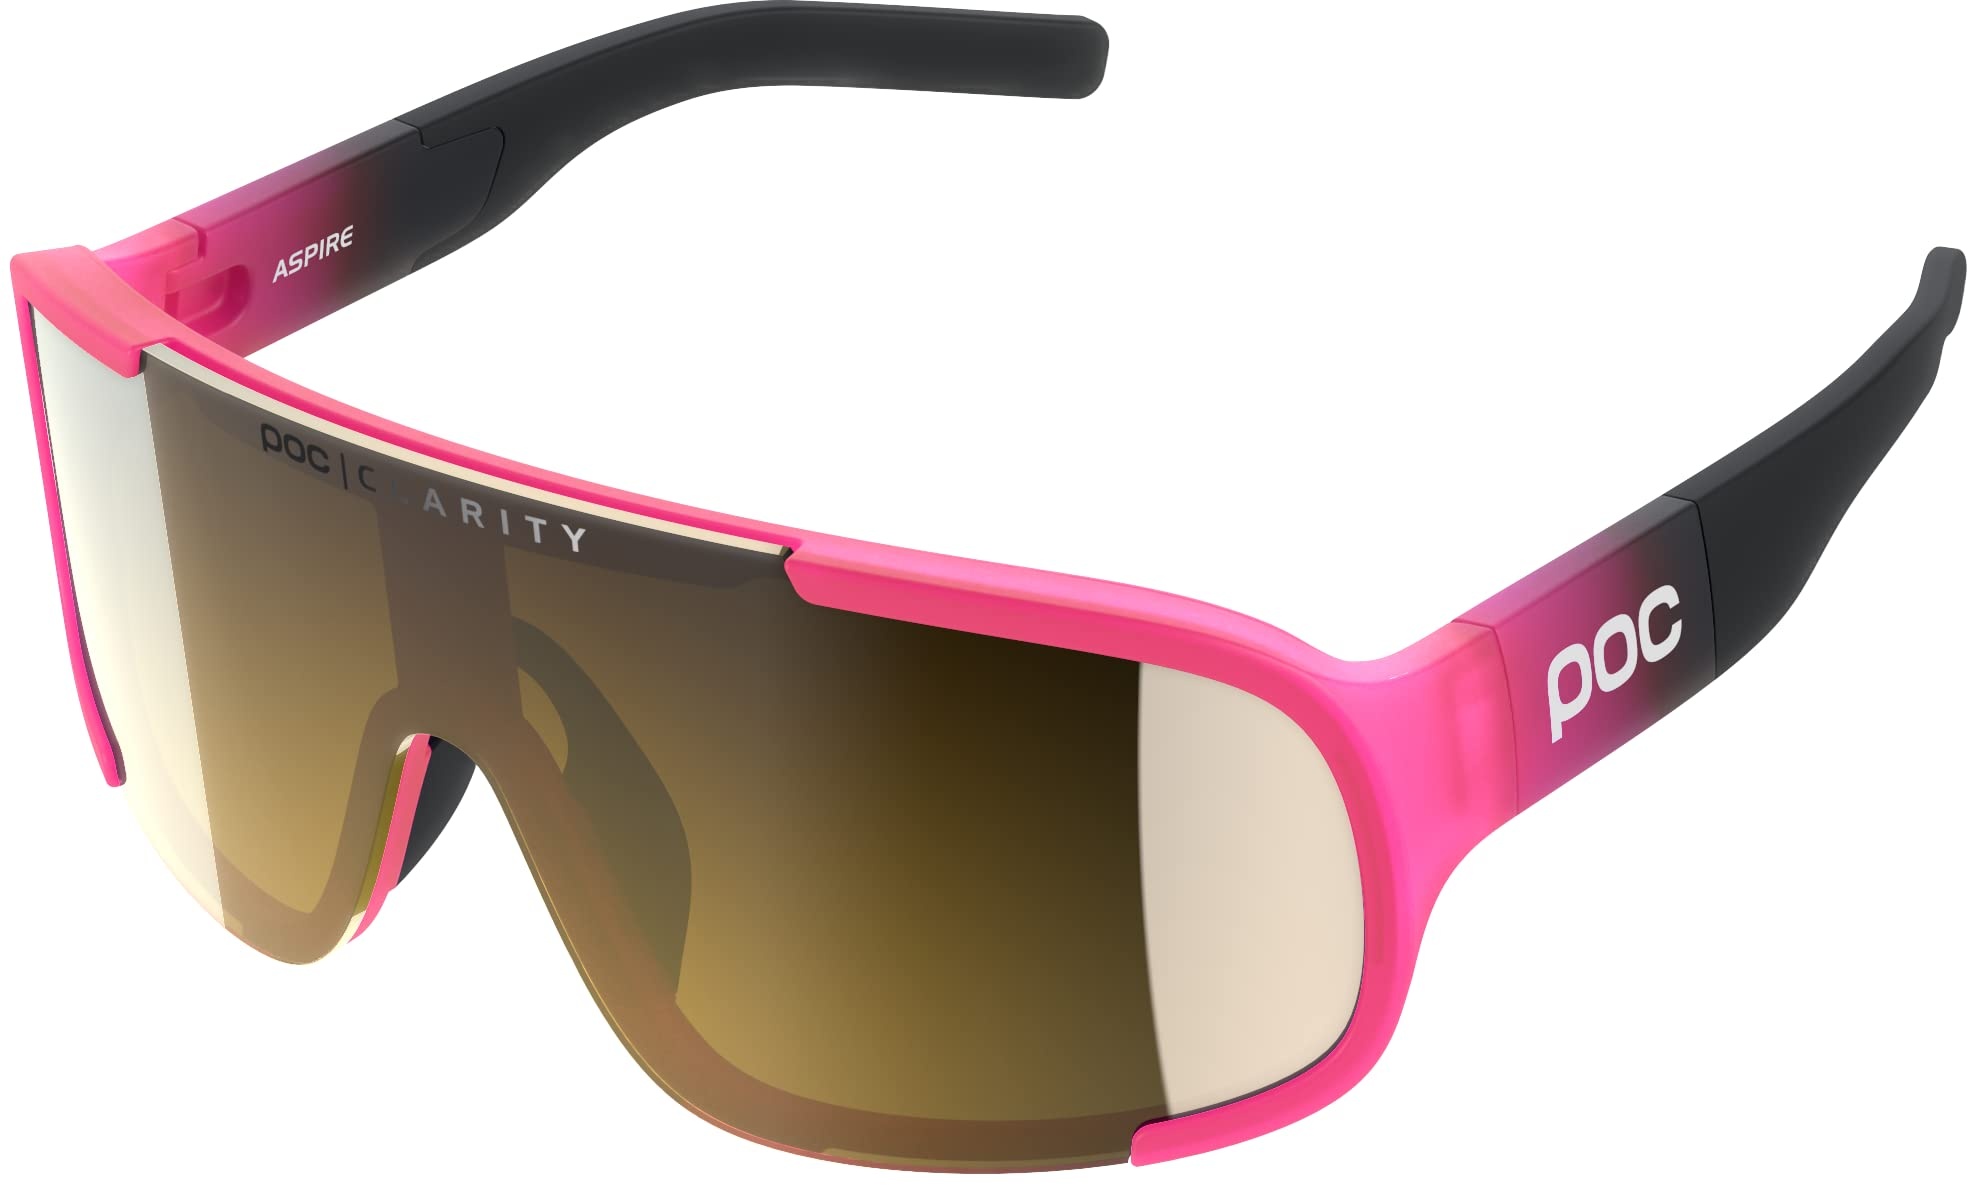 POC Aspire Sonnenbrille - Sportbrille für Radfahrer mit maximalen Komfort und beste Sicht